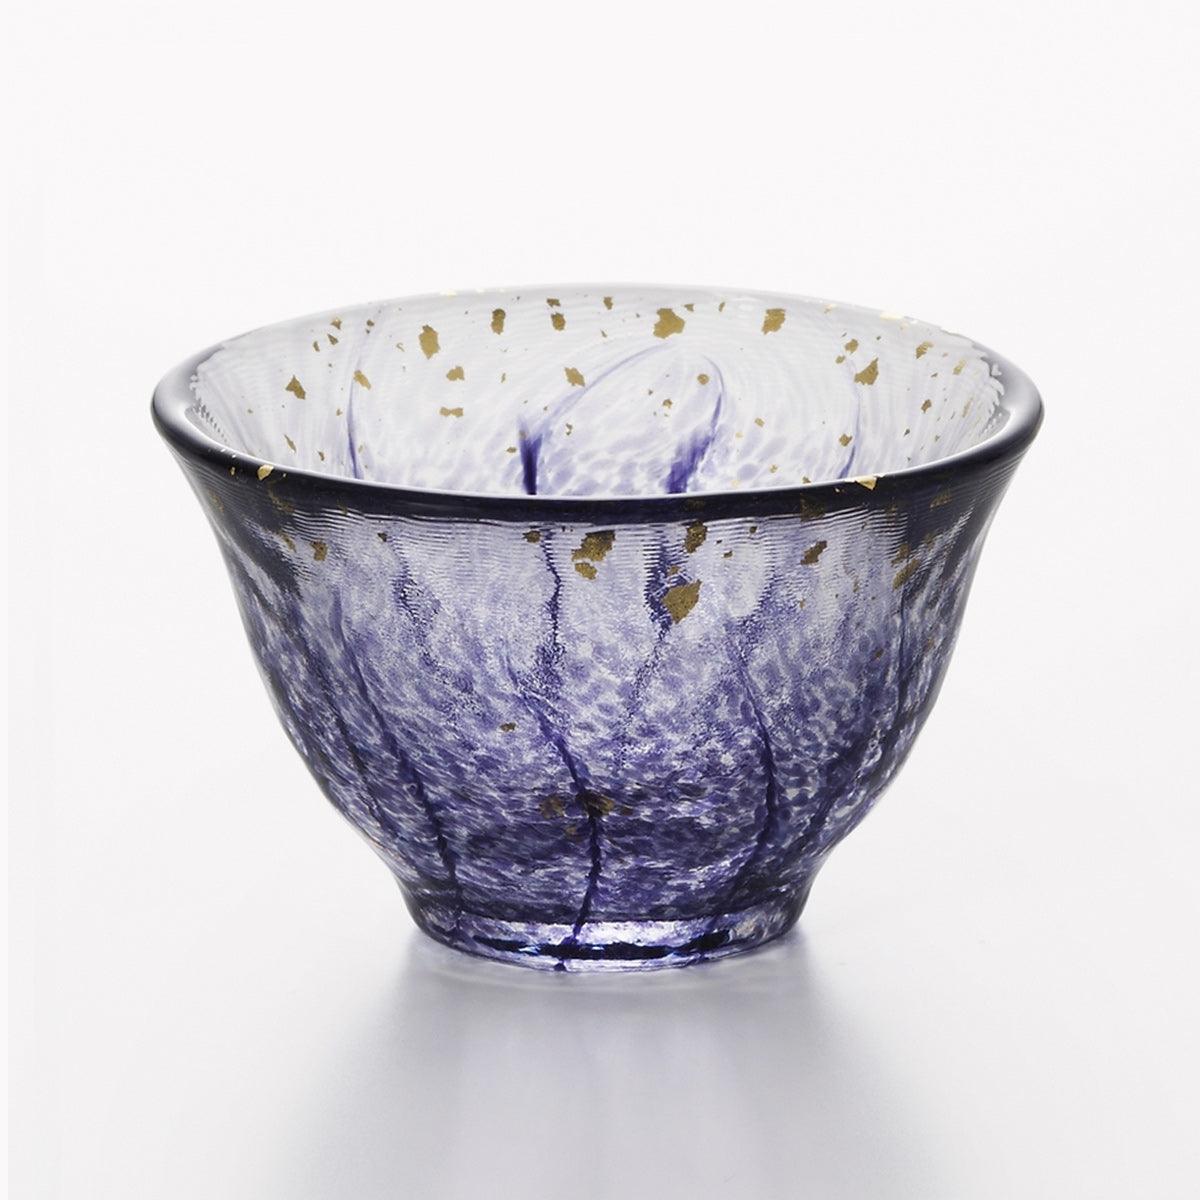 (一對價)70cc【Aderia】醉紫藤 日本津輕庄内金箔手工玻璃祝杯 - MSA玻璃雕刻